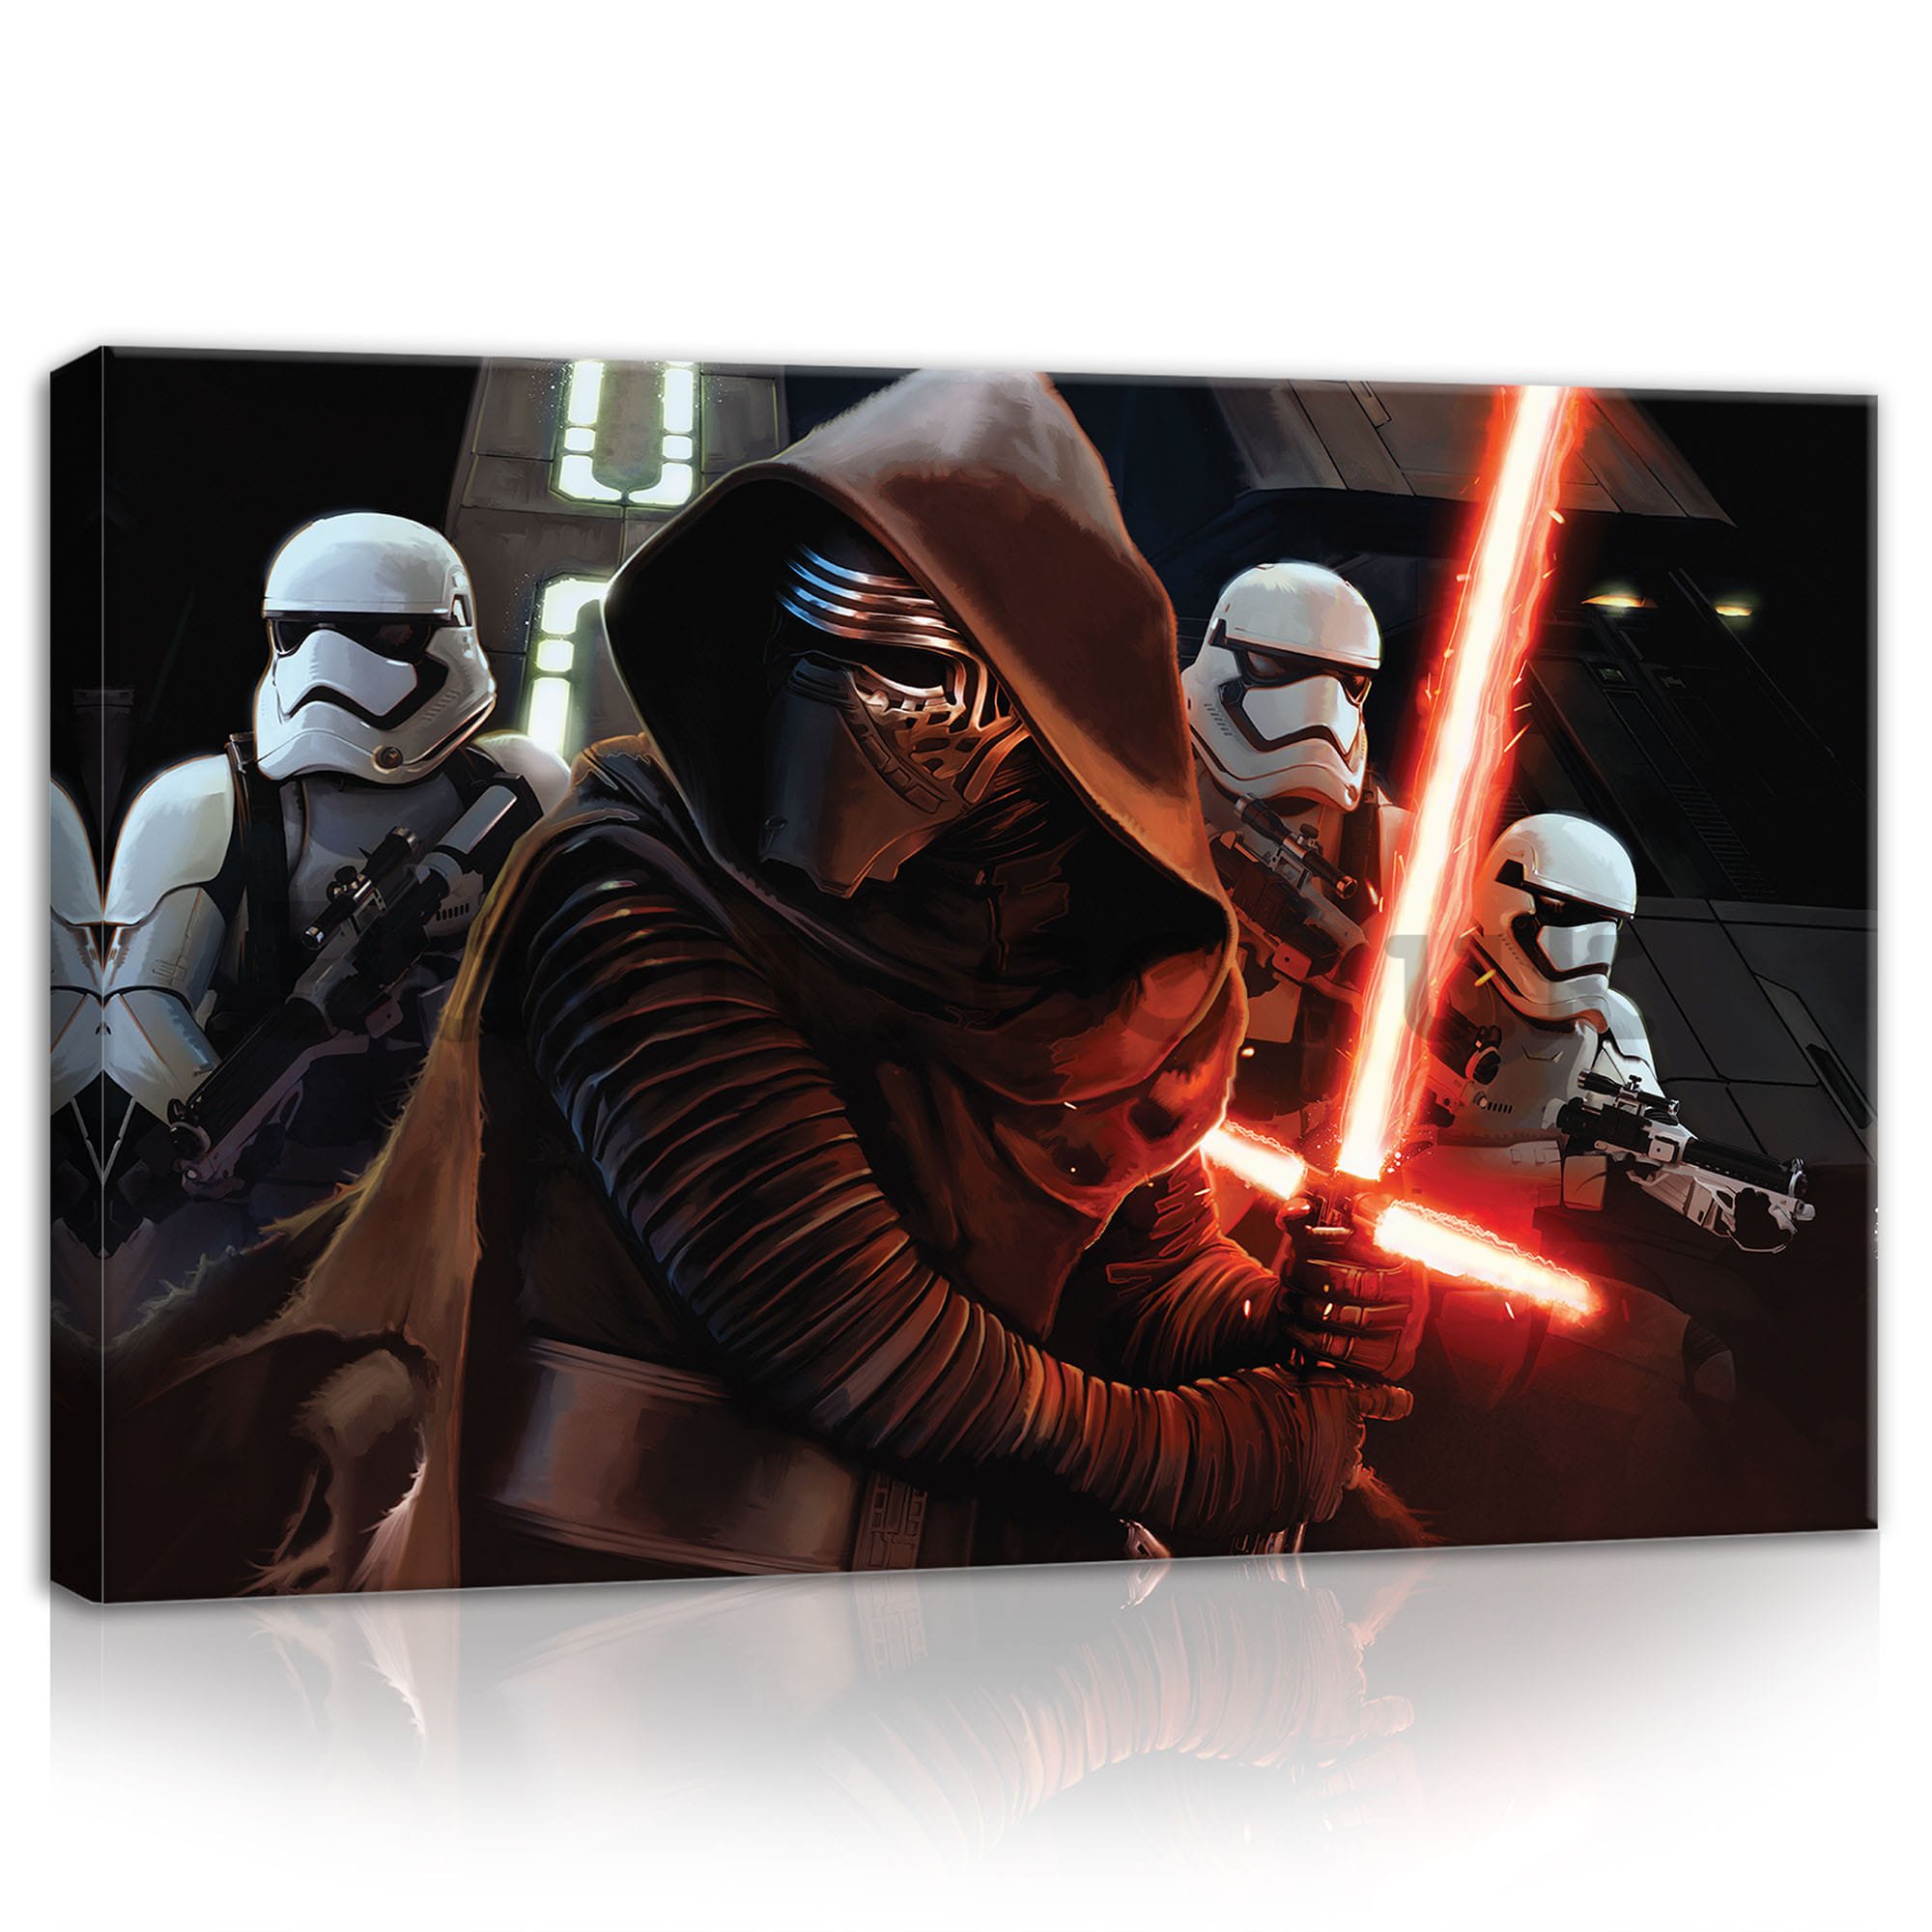 Painting on canvas: Star Wars Dark Lord Kylo Ren - 60x40 cm